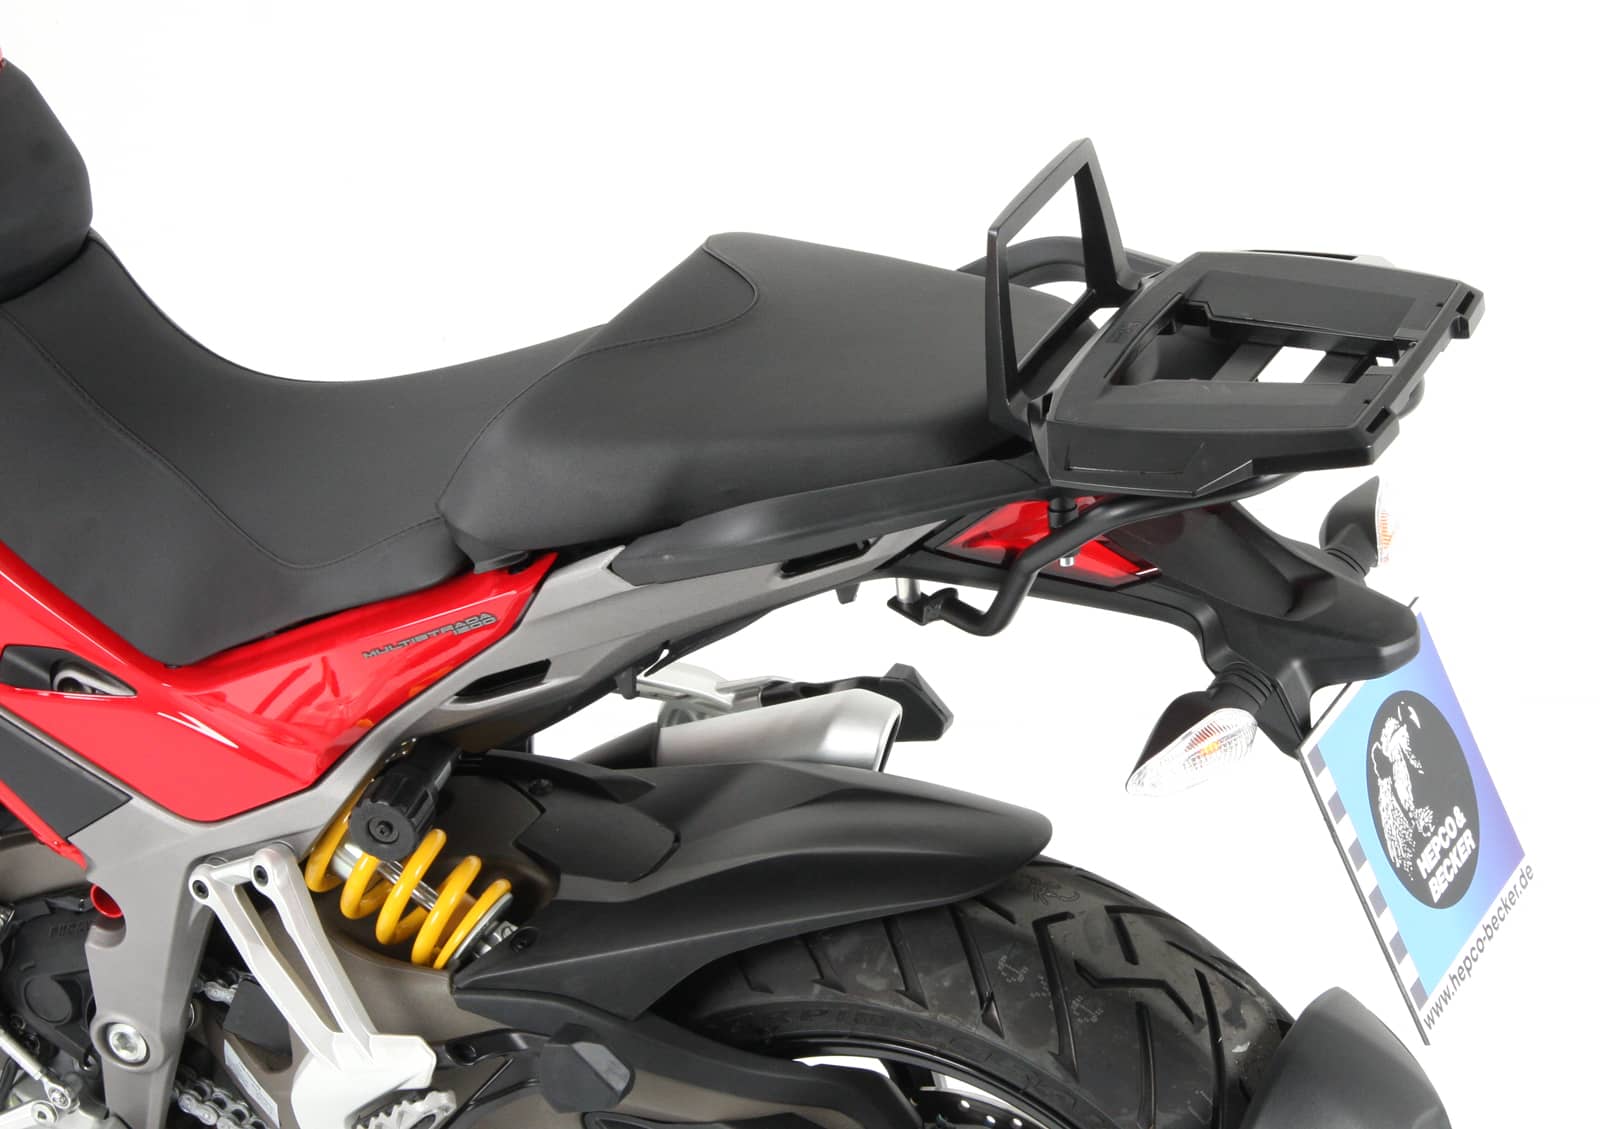 Alurack Topcaseträger schwarz für Ducati Multistrada 1200/S (2015-2017)